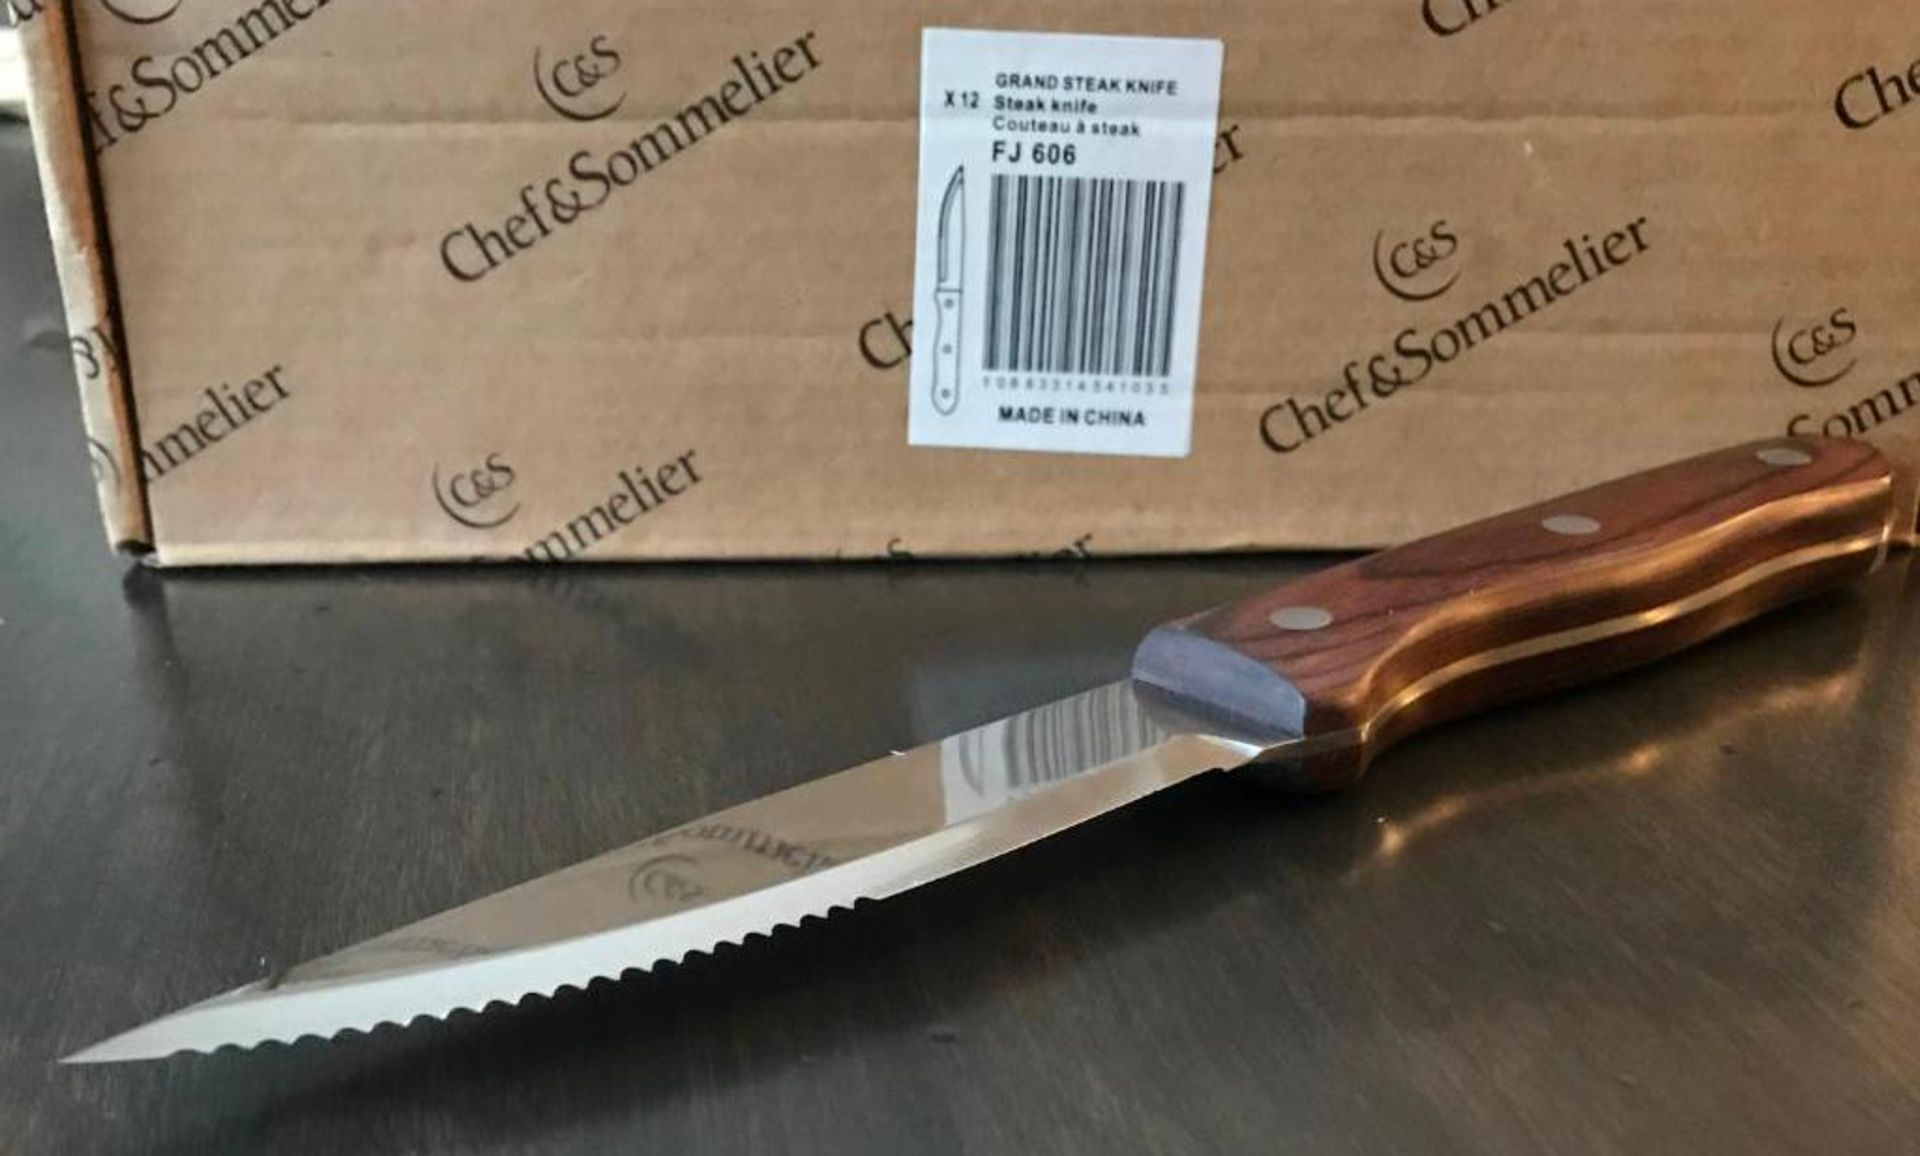 CHEF & SOMMELIER FJ606 GRAND 9" STEAK KNIFE - 12/CASE - NEW - Image 3 of 8